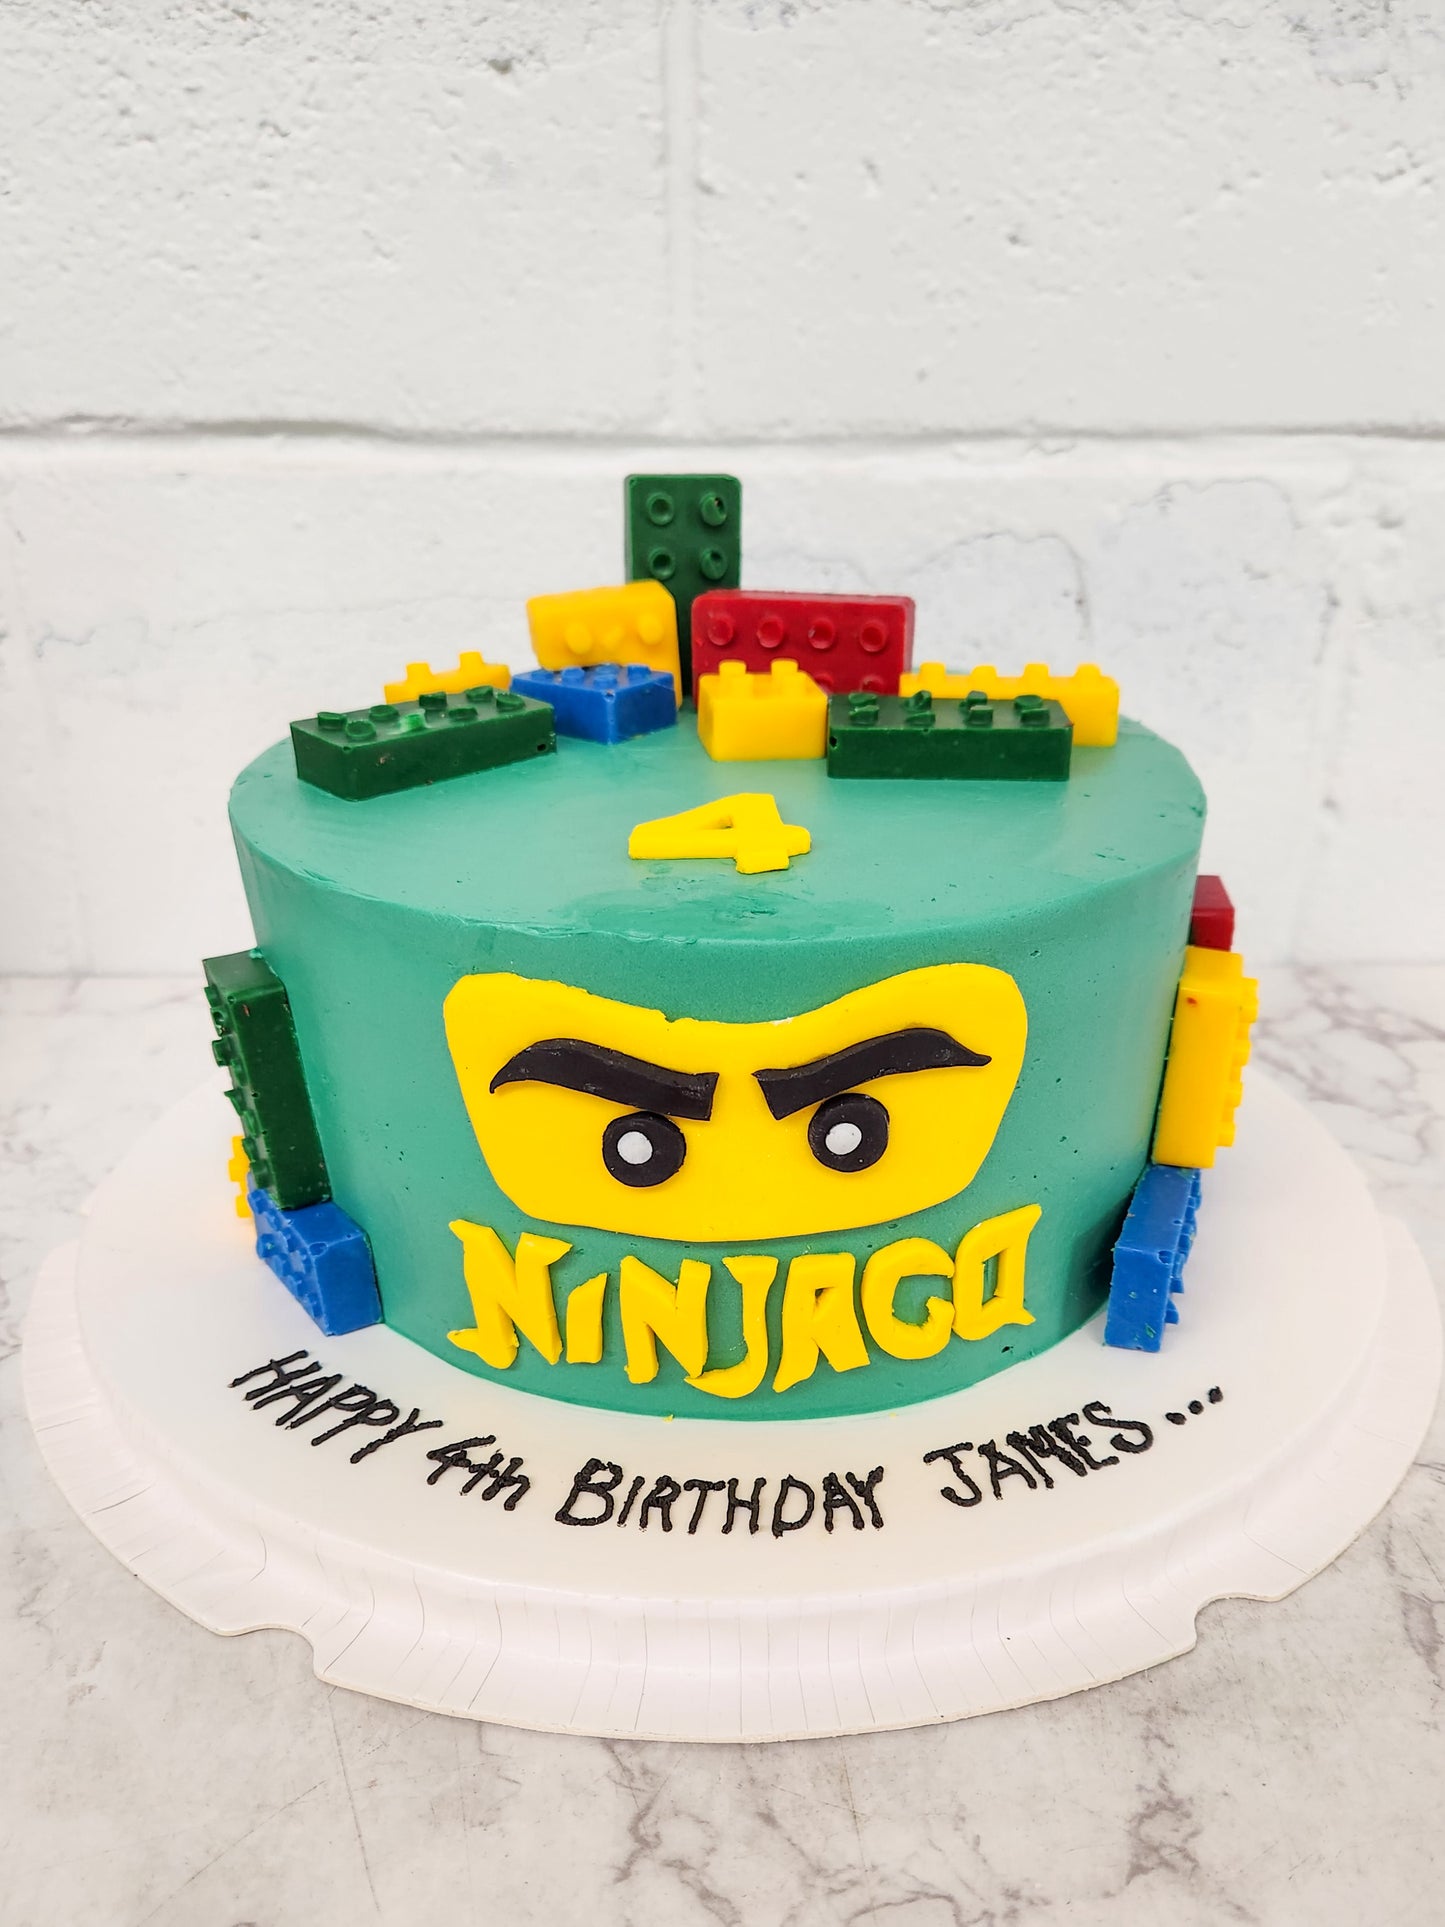 Ninjago theme cake